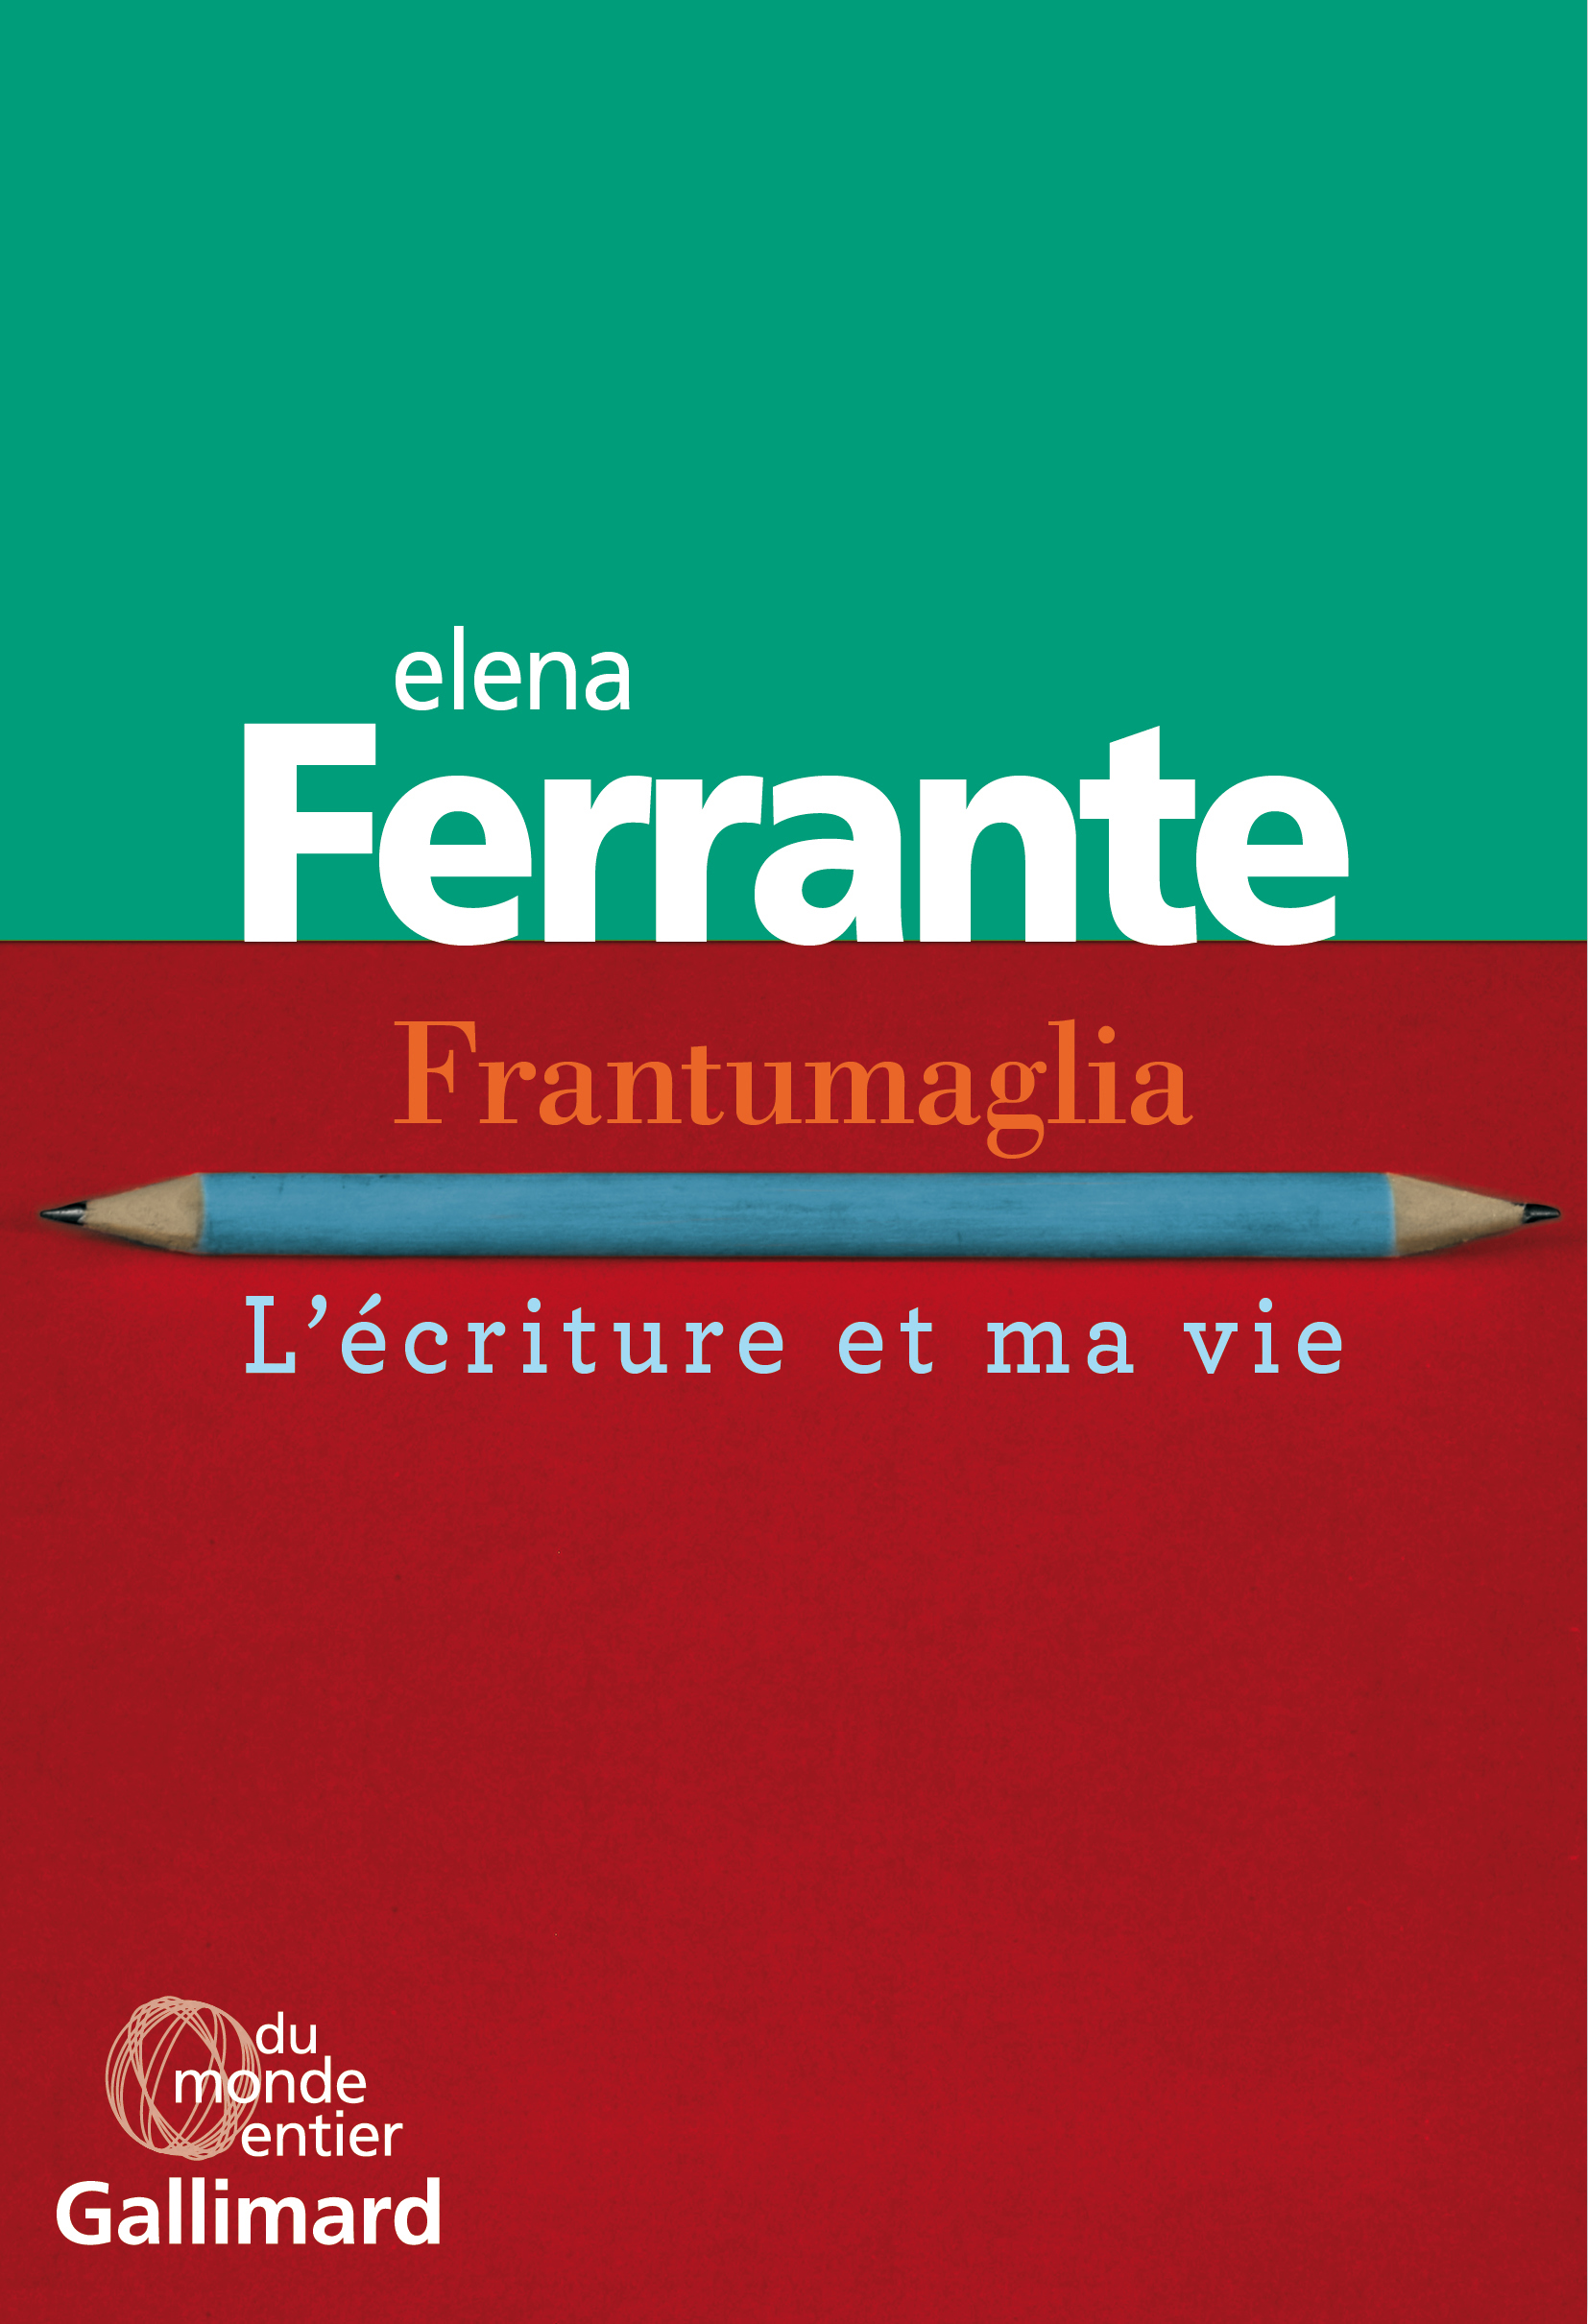 Elena Ferrante, Frantumaglia. L'écriture et ma vie, Gallimard, Du monde entier, 2019